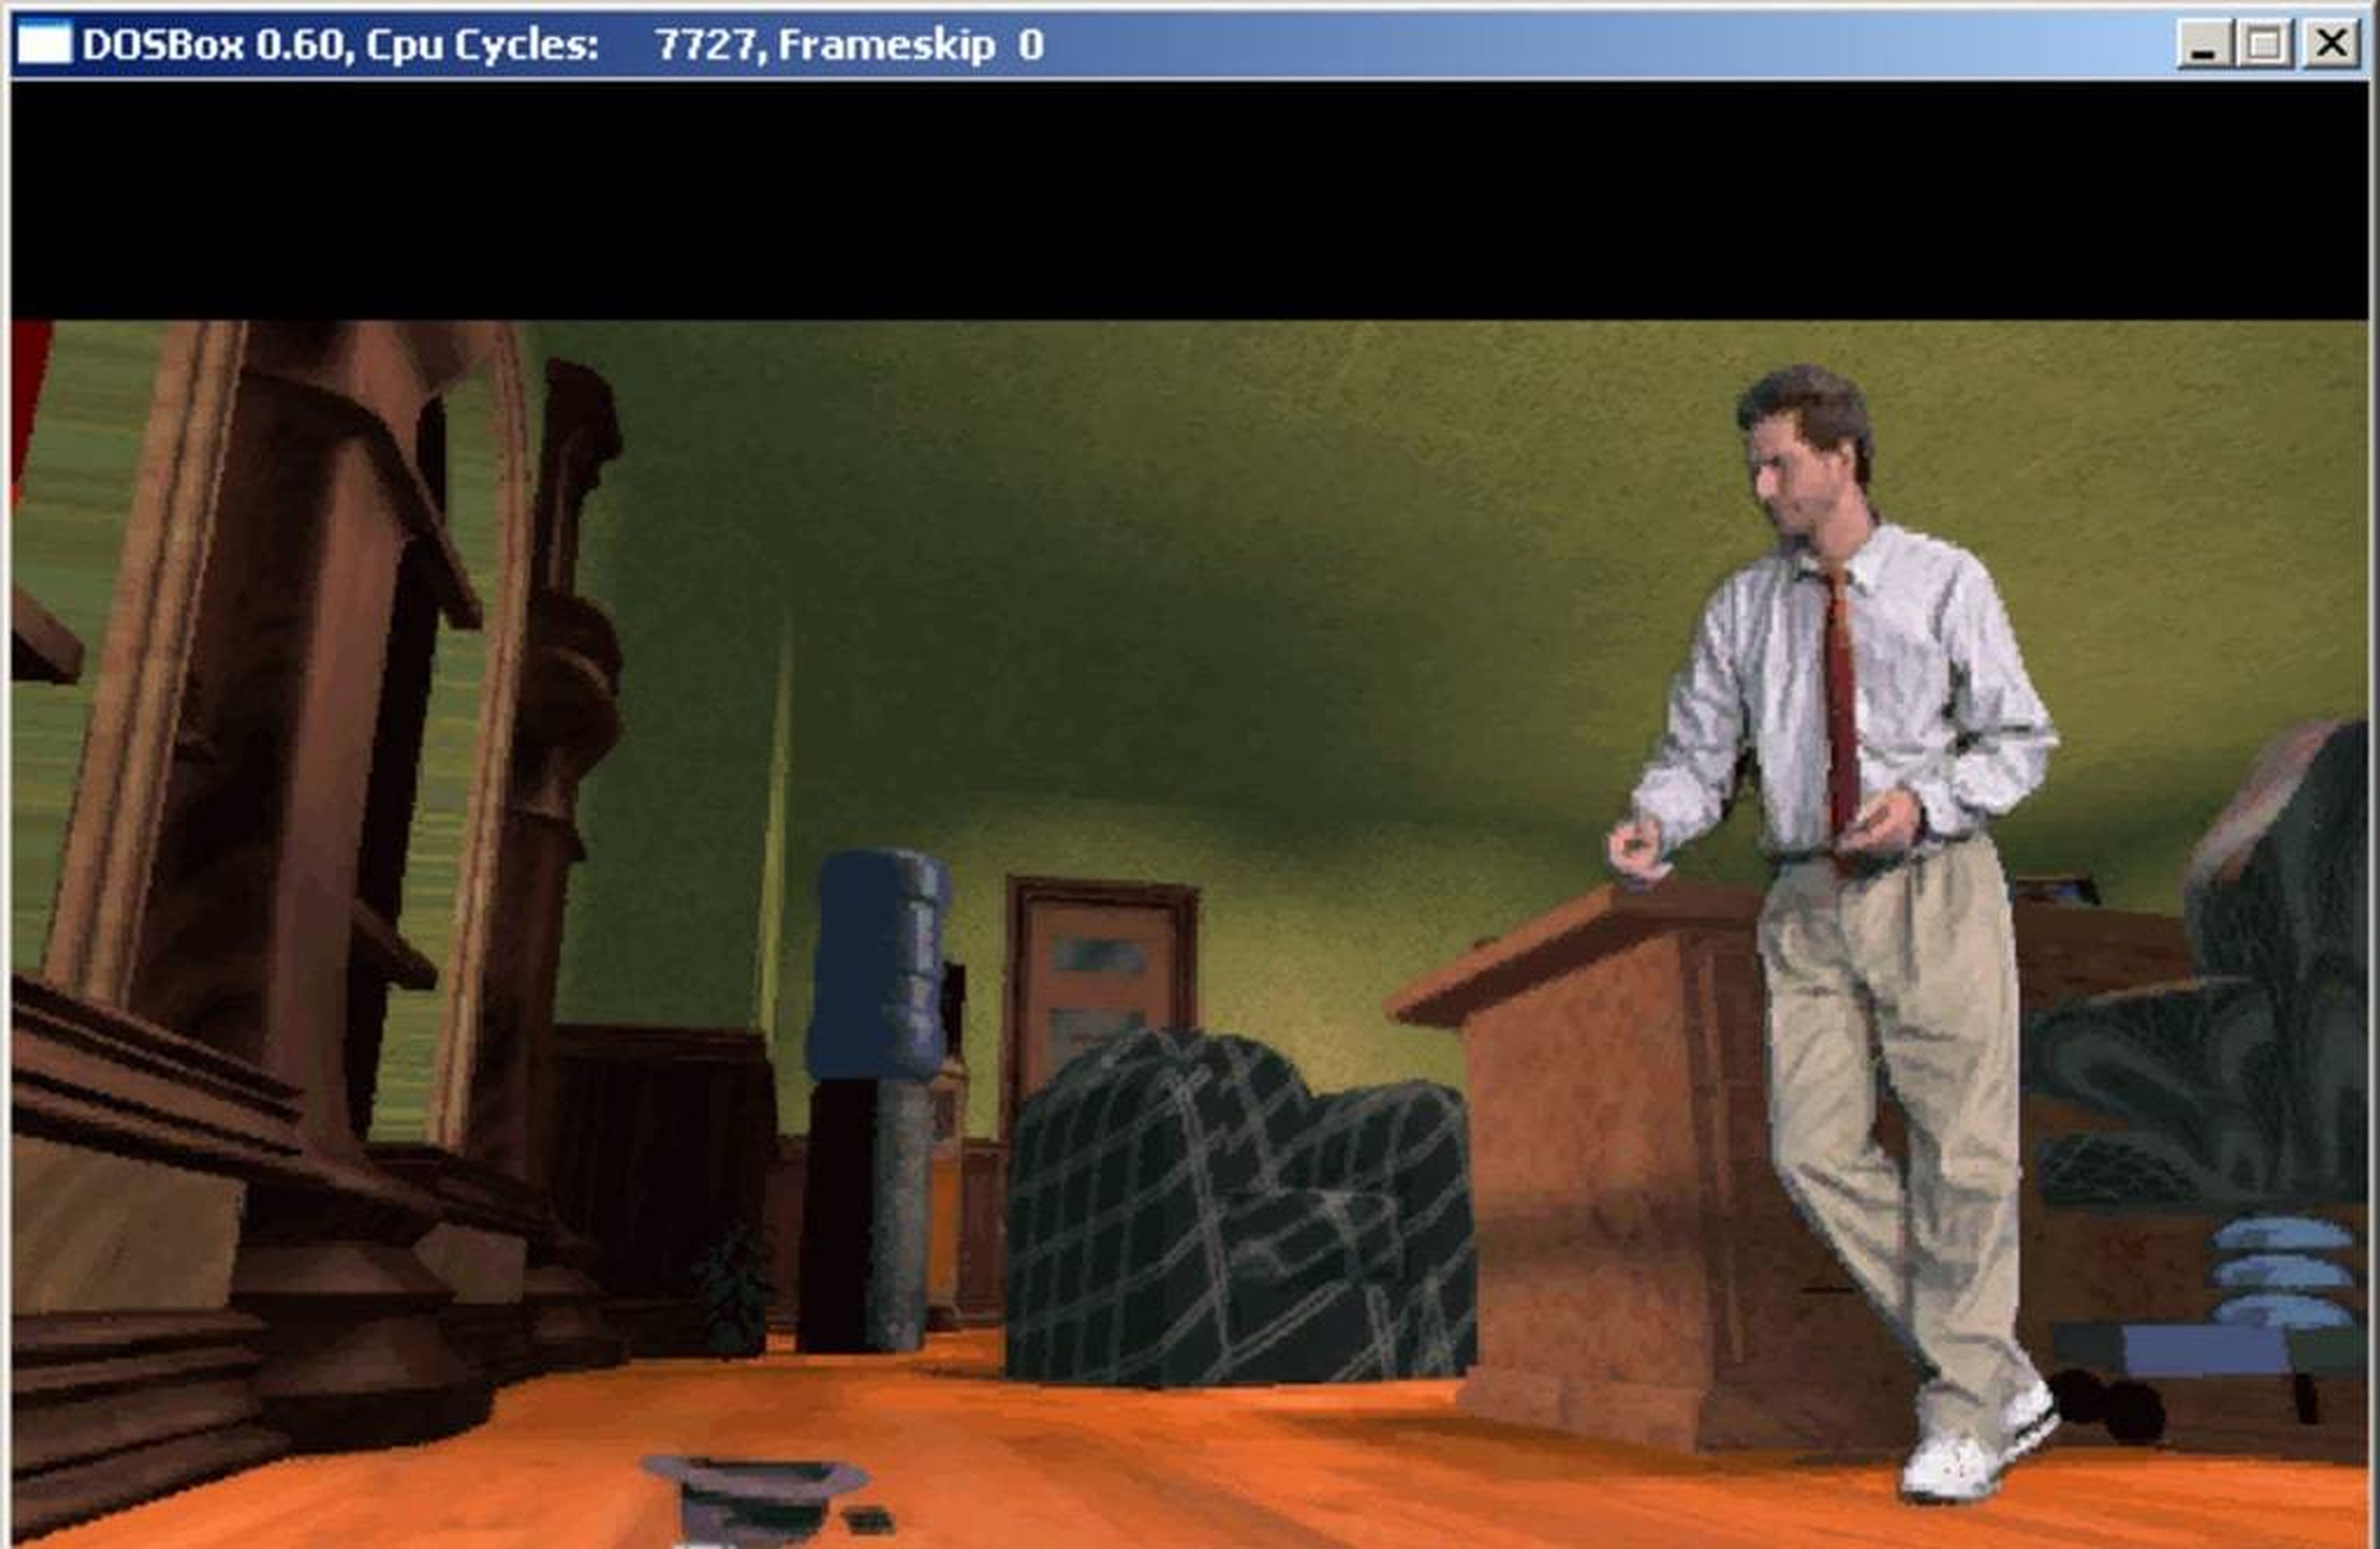 El programa 'DOSBox' te permite jugar fácilmente a juegos antiguos en tu ordenador moderno.